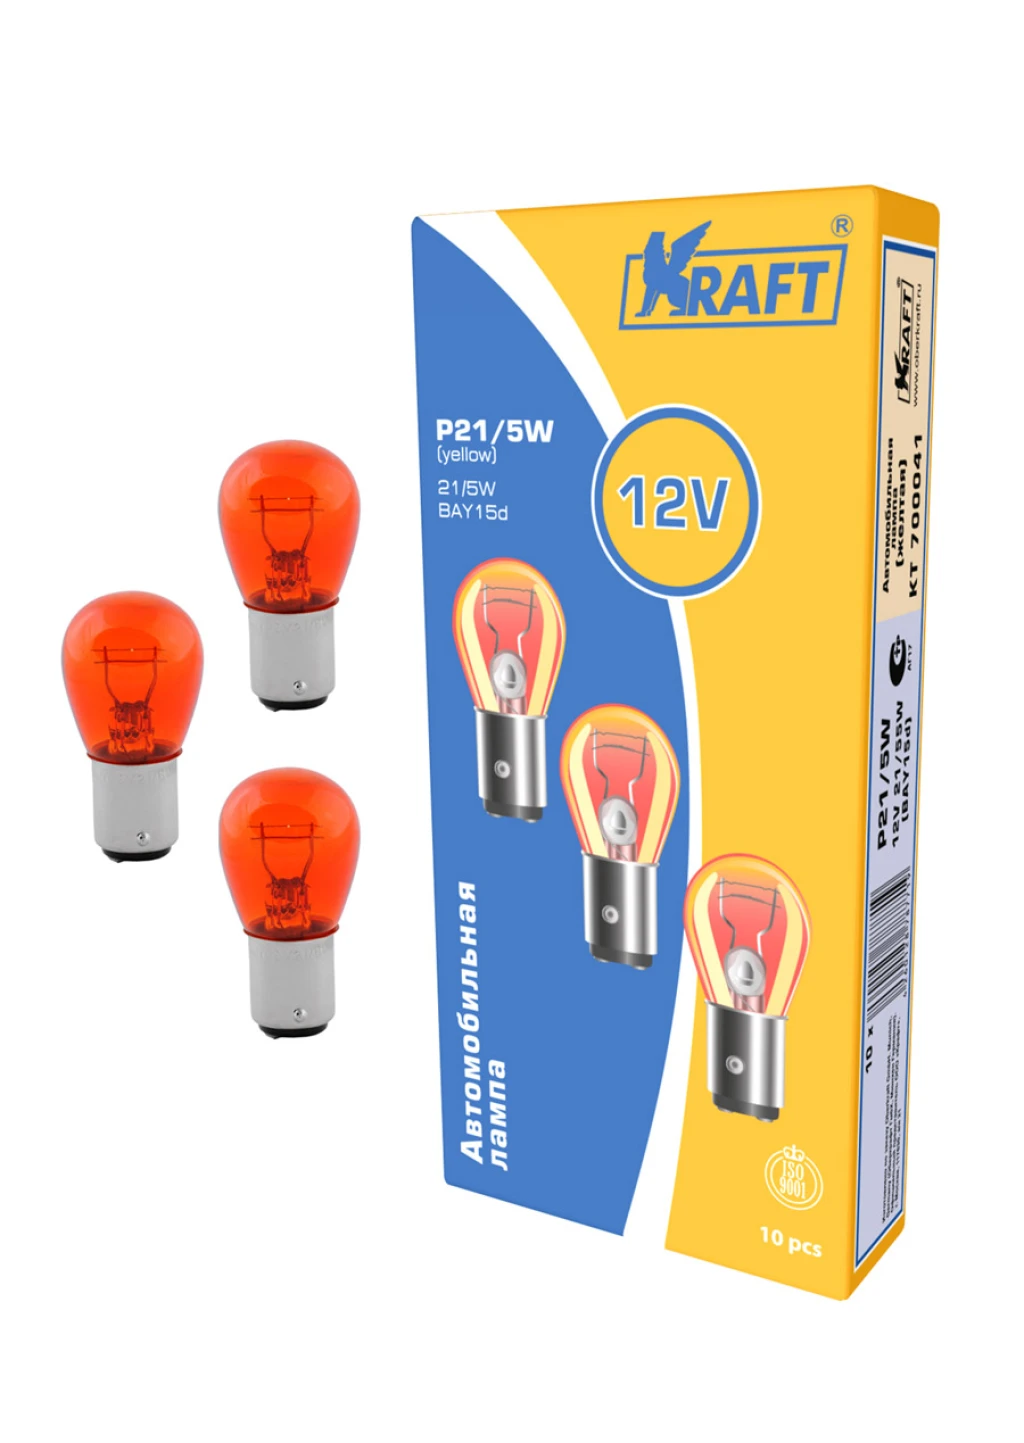 Лампа подсветки Kraft KT 700041 P21/5W 12V 21/5W BAY15d,  yellow, 1